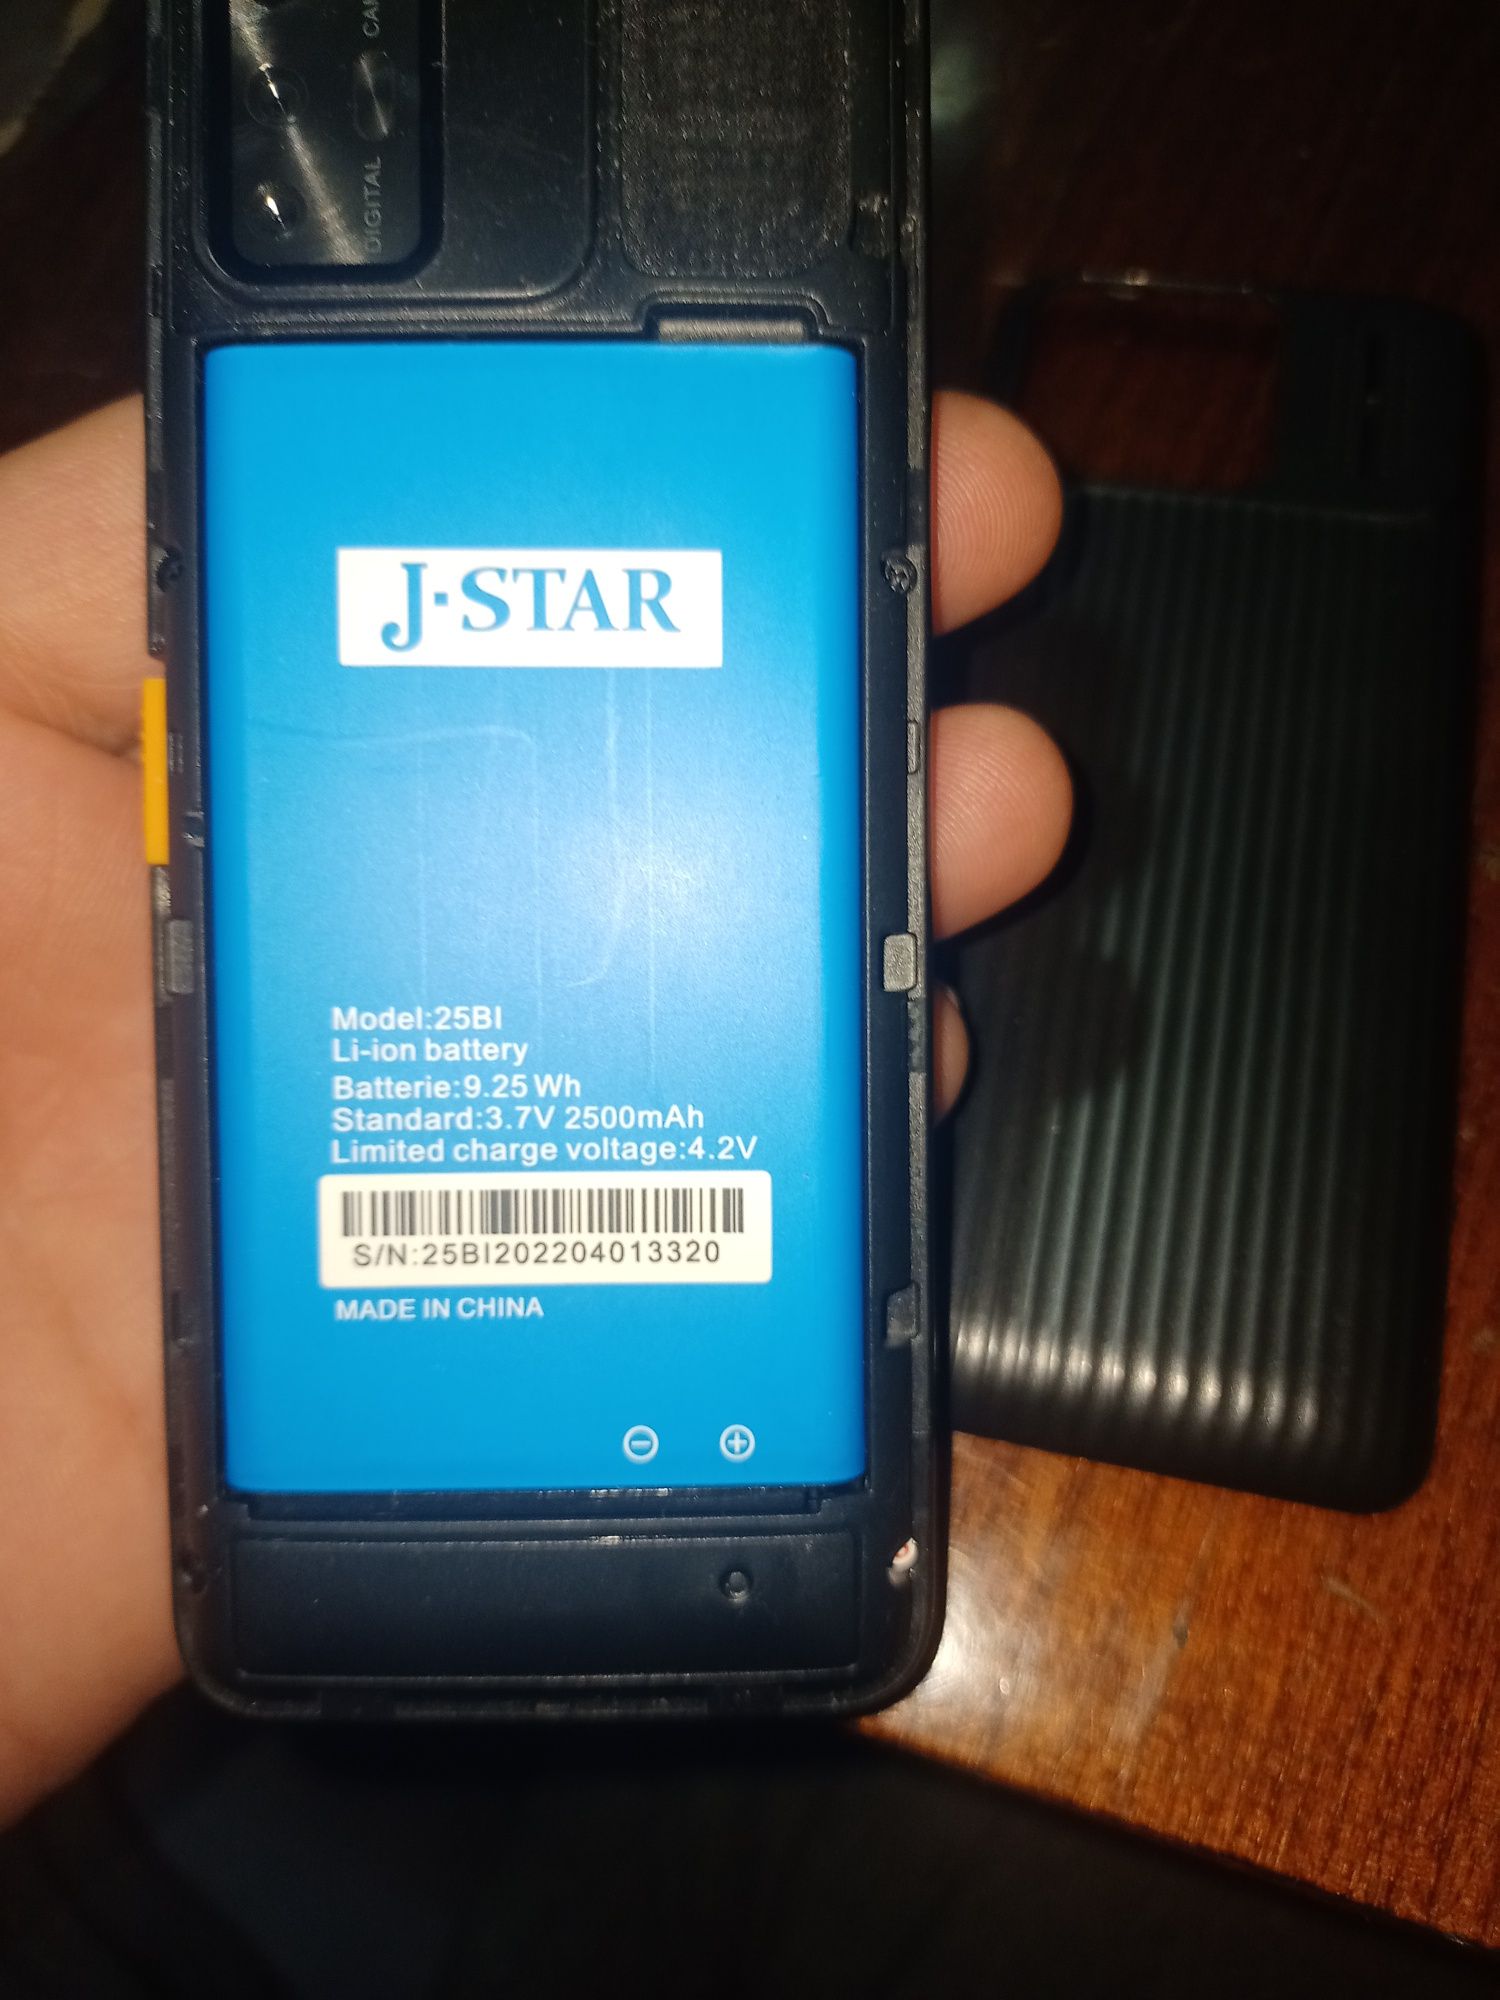 Prostoy telefon J-STAR